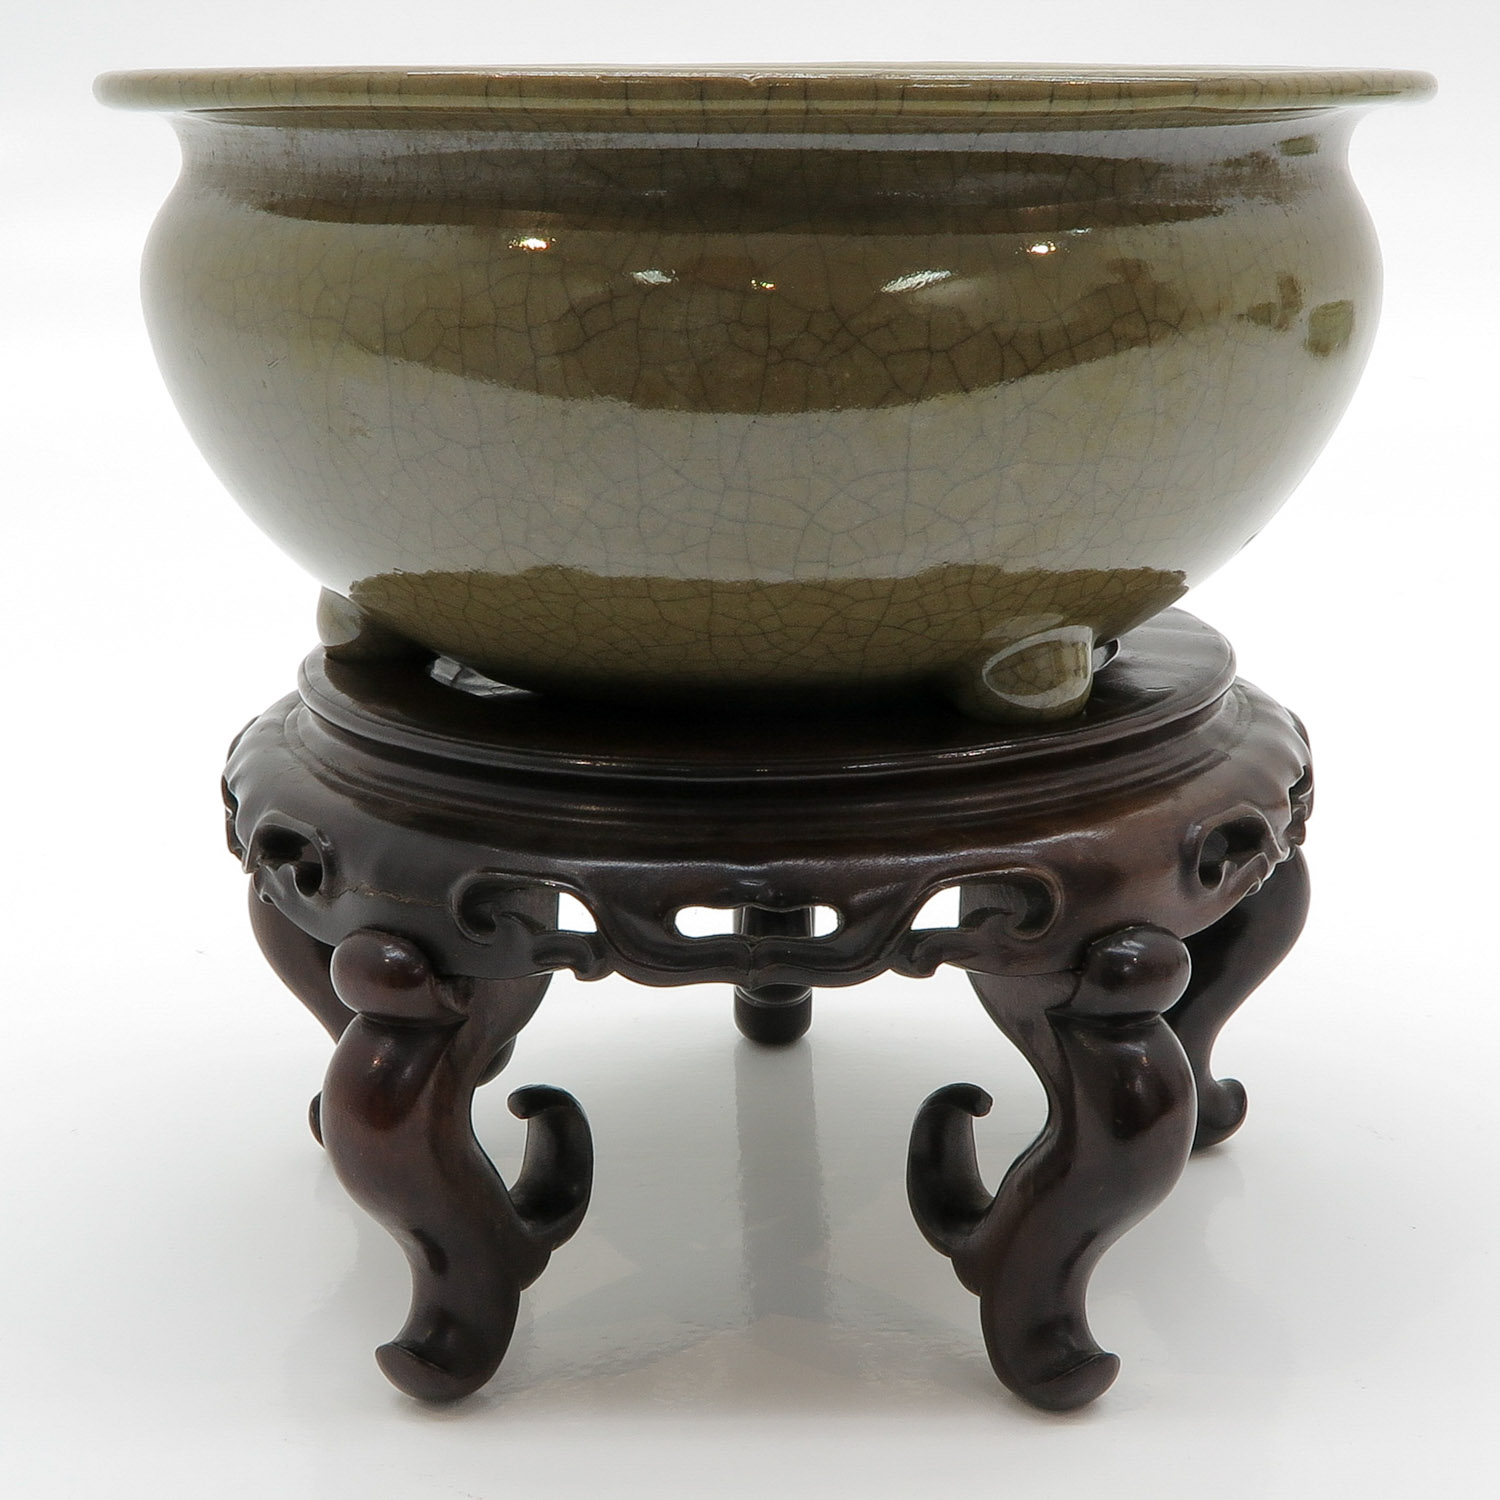 China Porcelain Crackle Ware Censer - Image 4 of 6